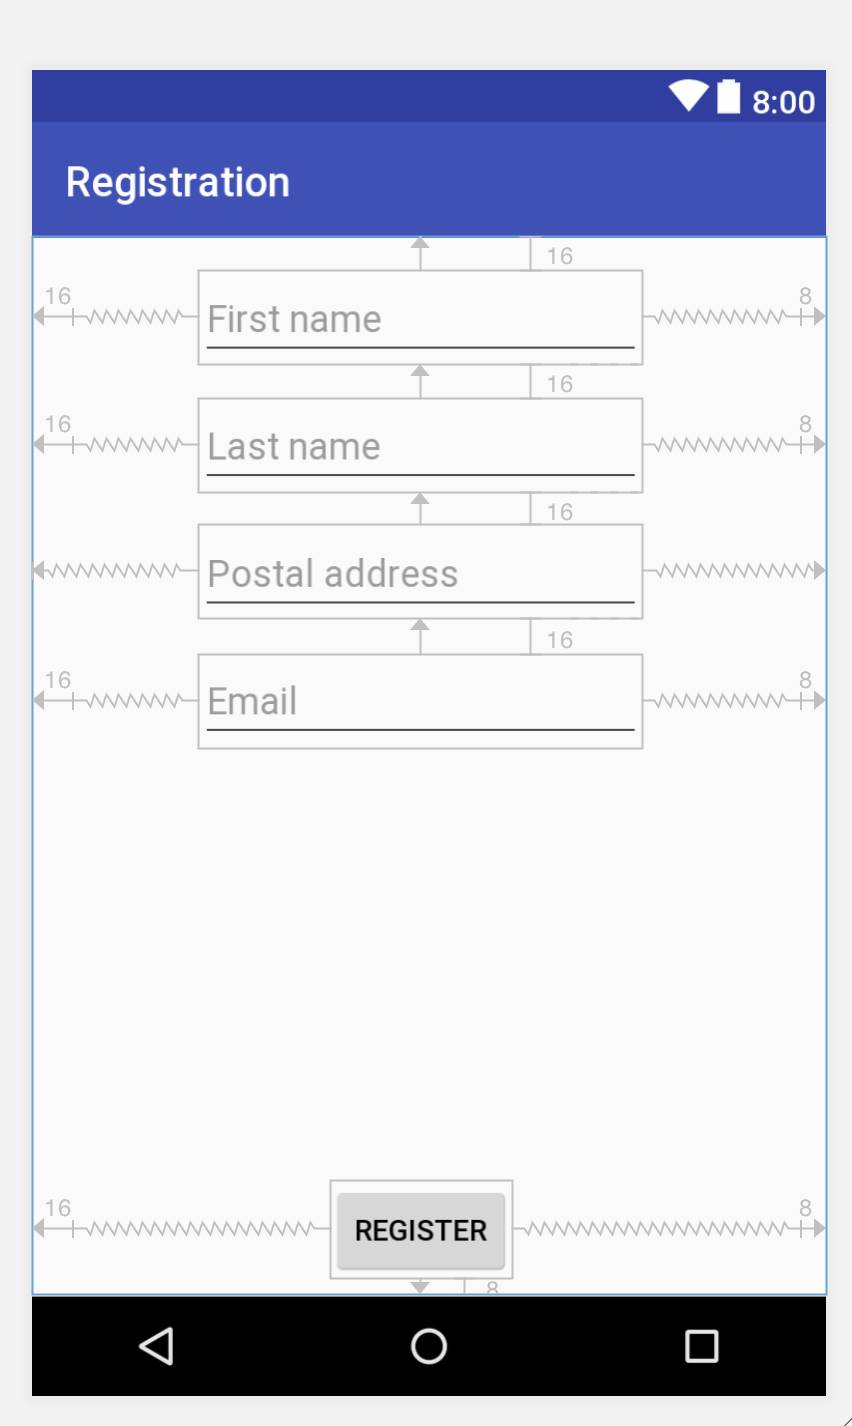 Registration form Final layout